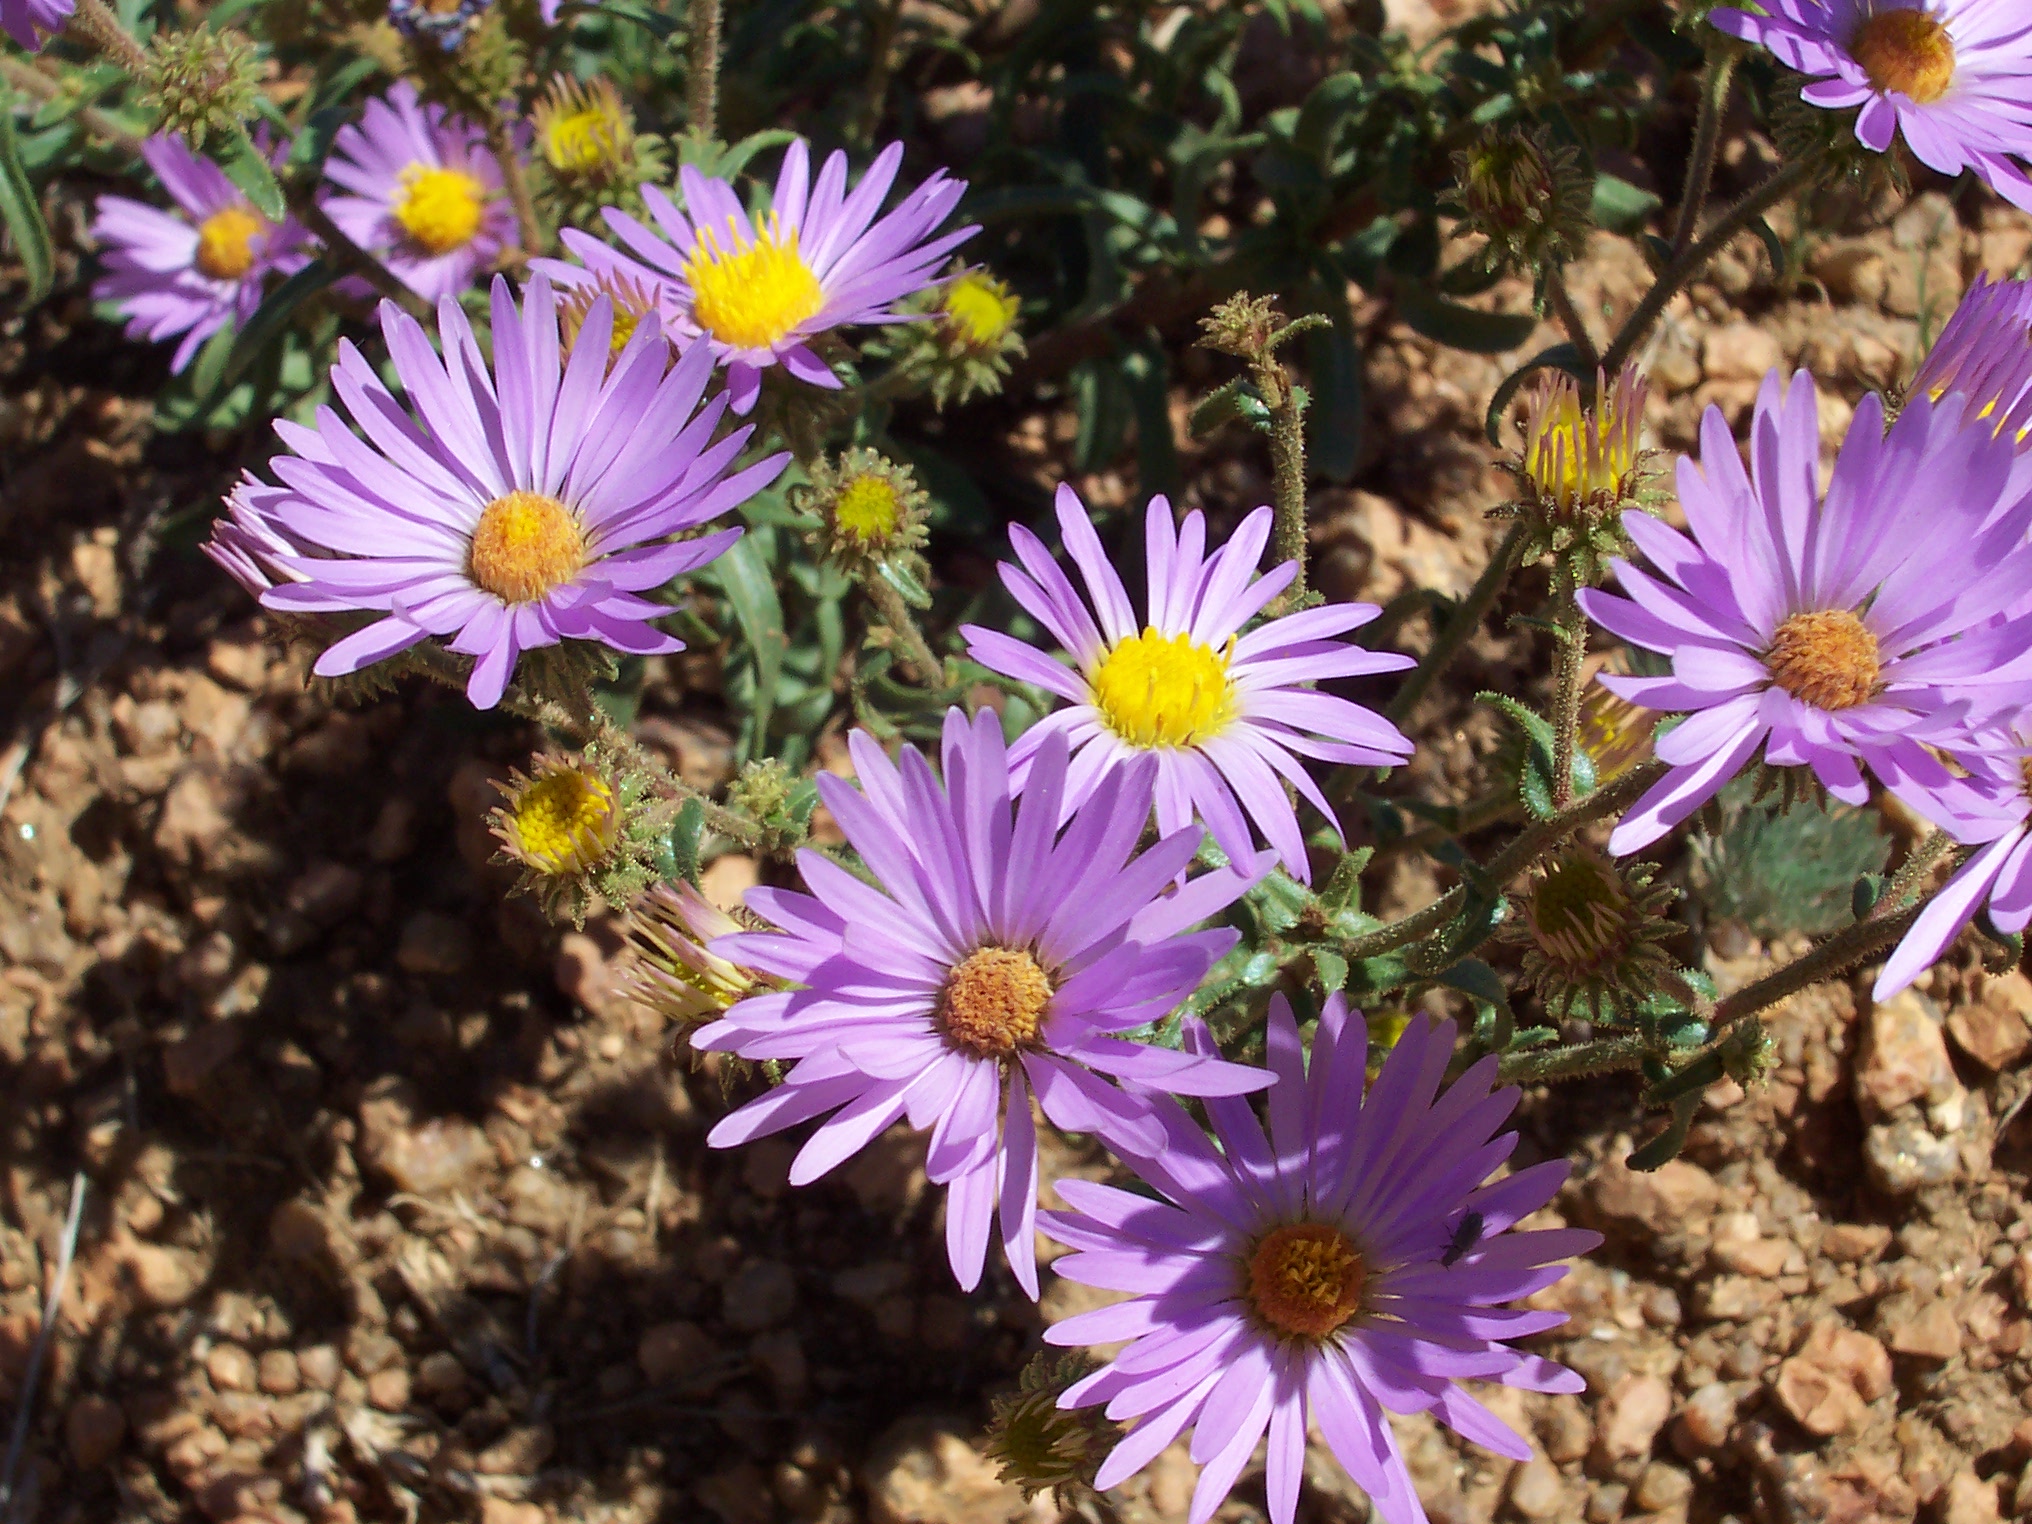 purple flowers in the dirt in a garden